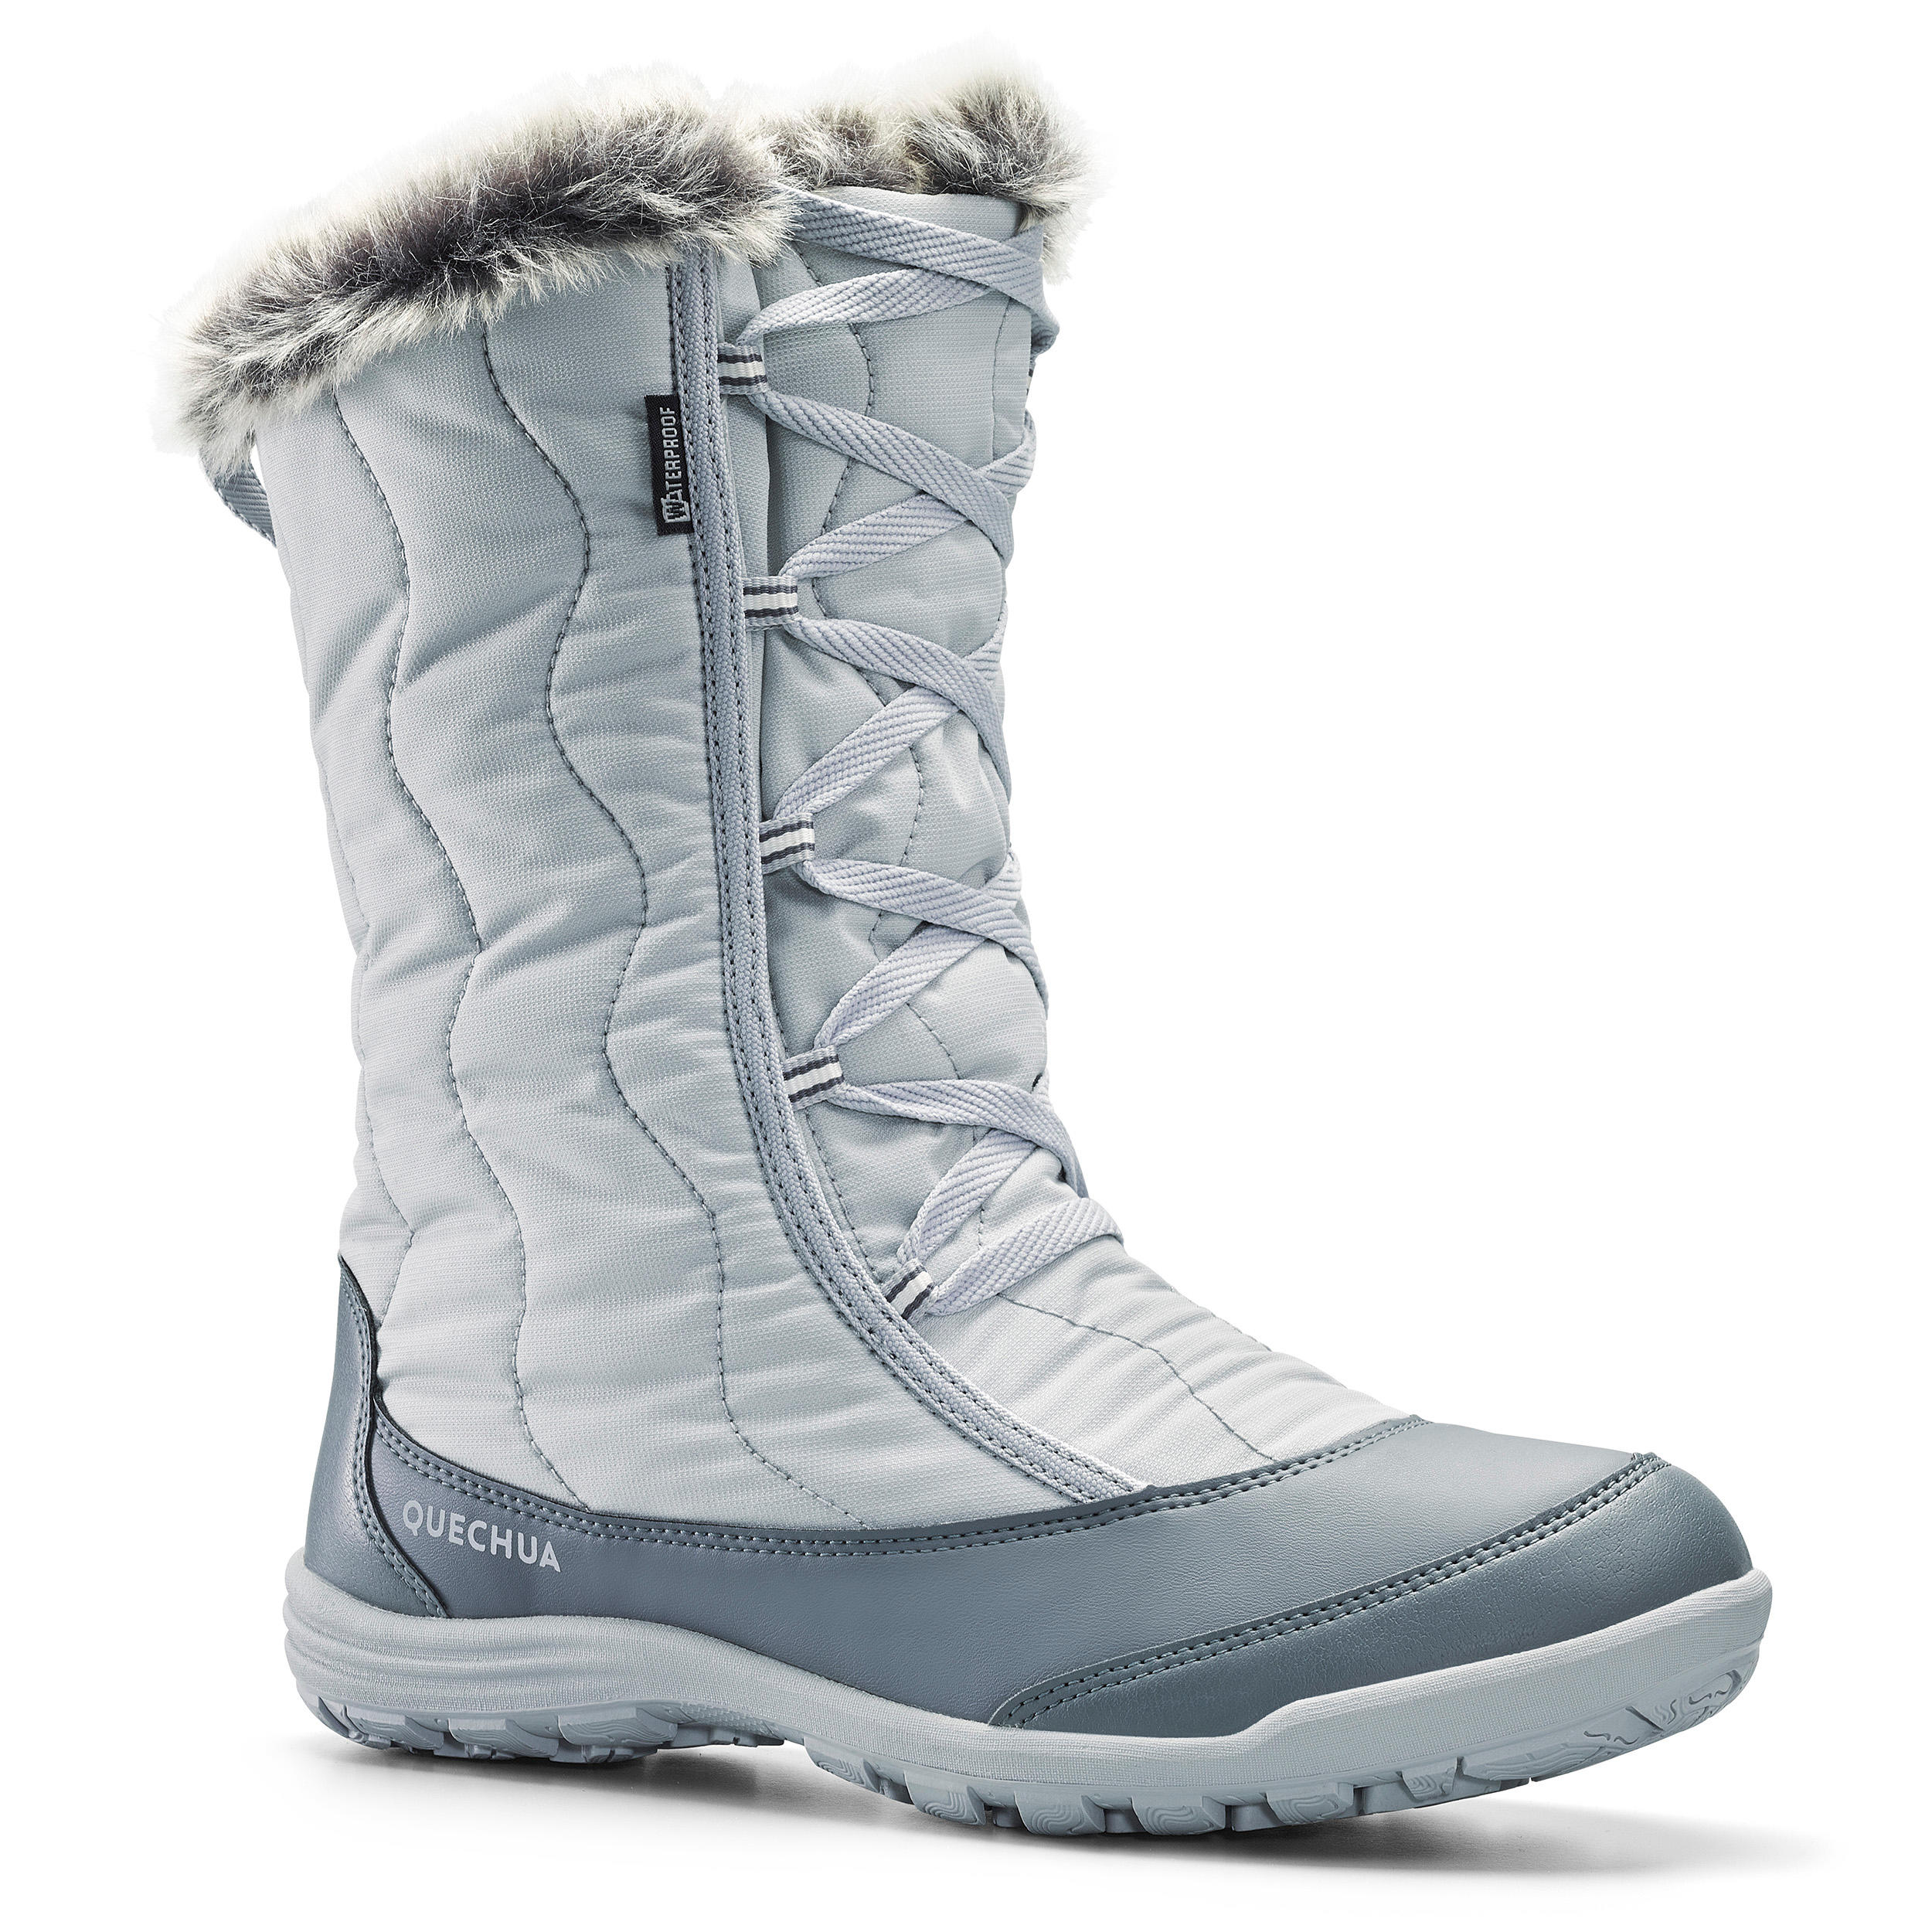 waterproof snow shoes